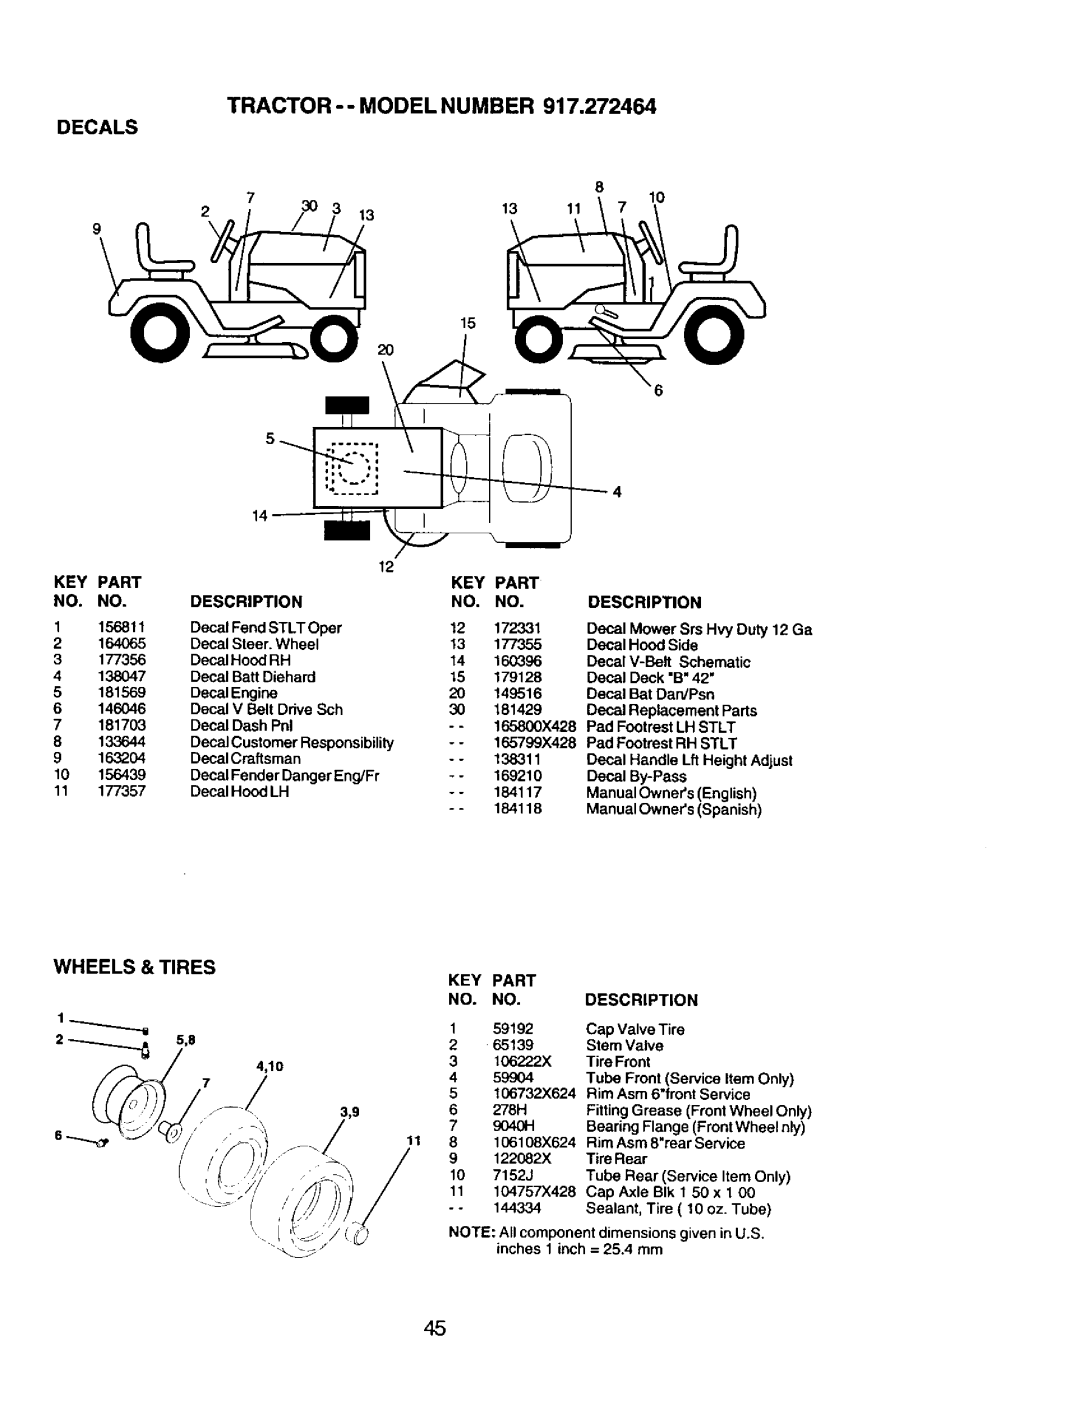 Craftsman 917.272464 owner manual Tractor - - Model Number 